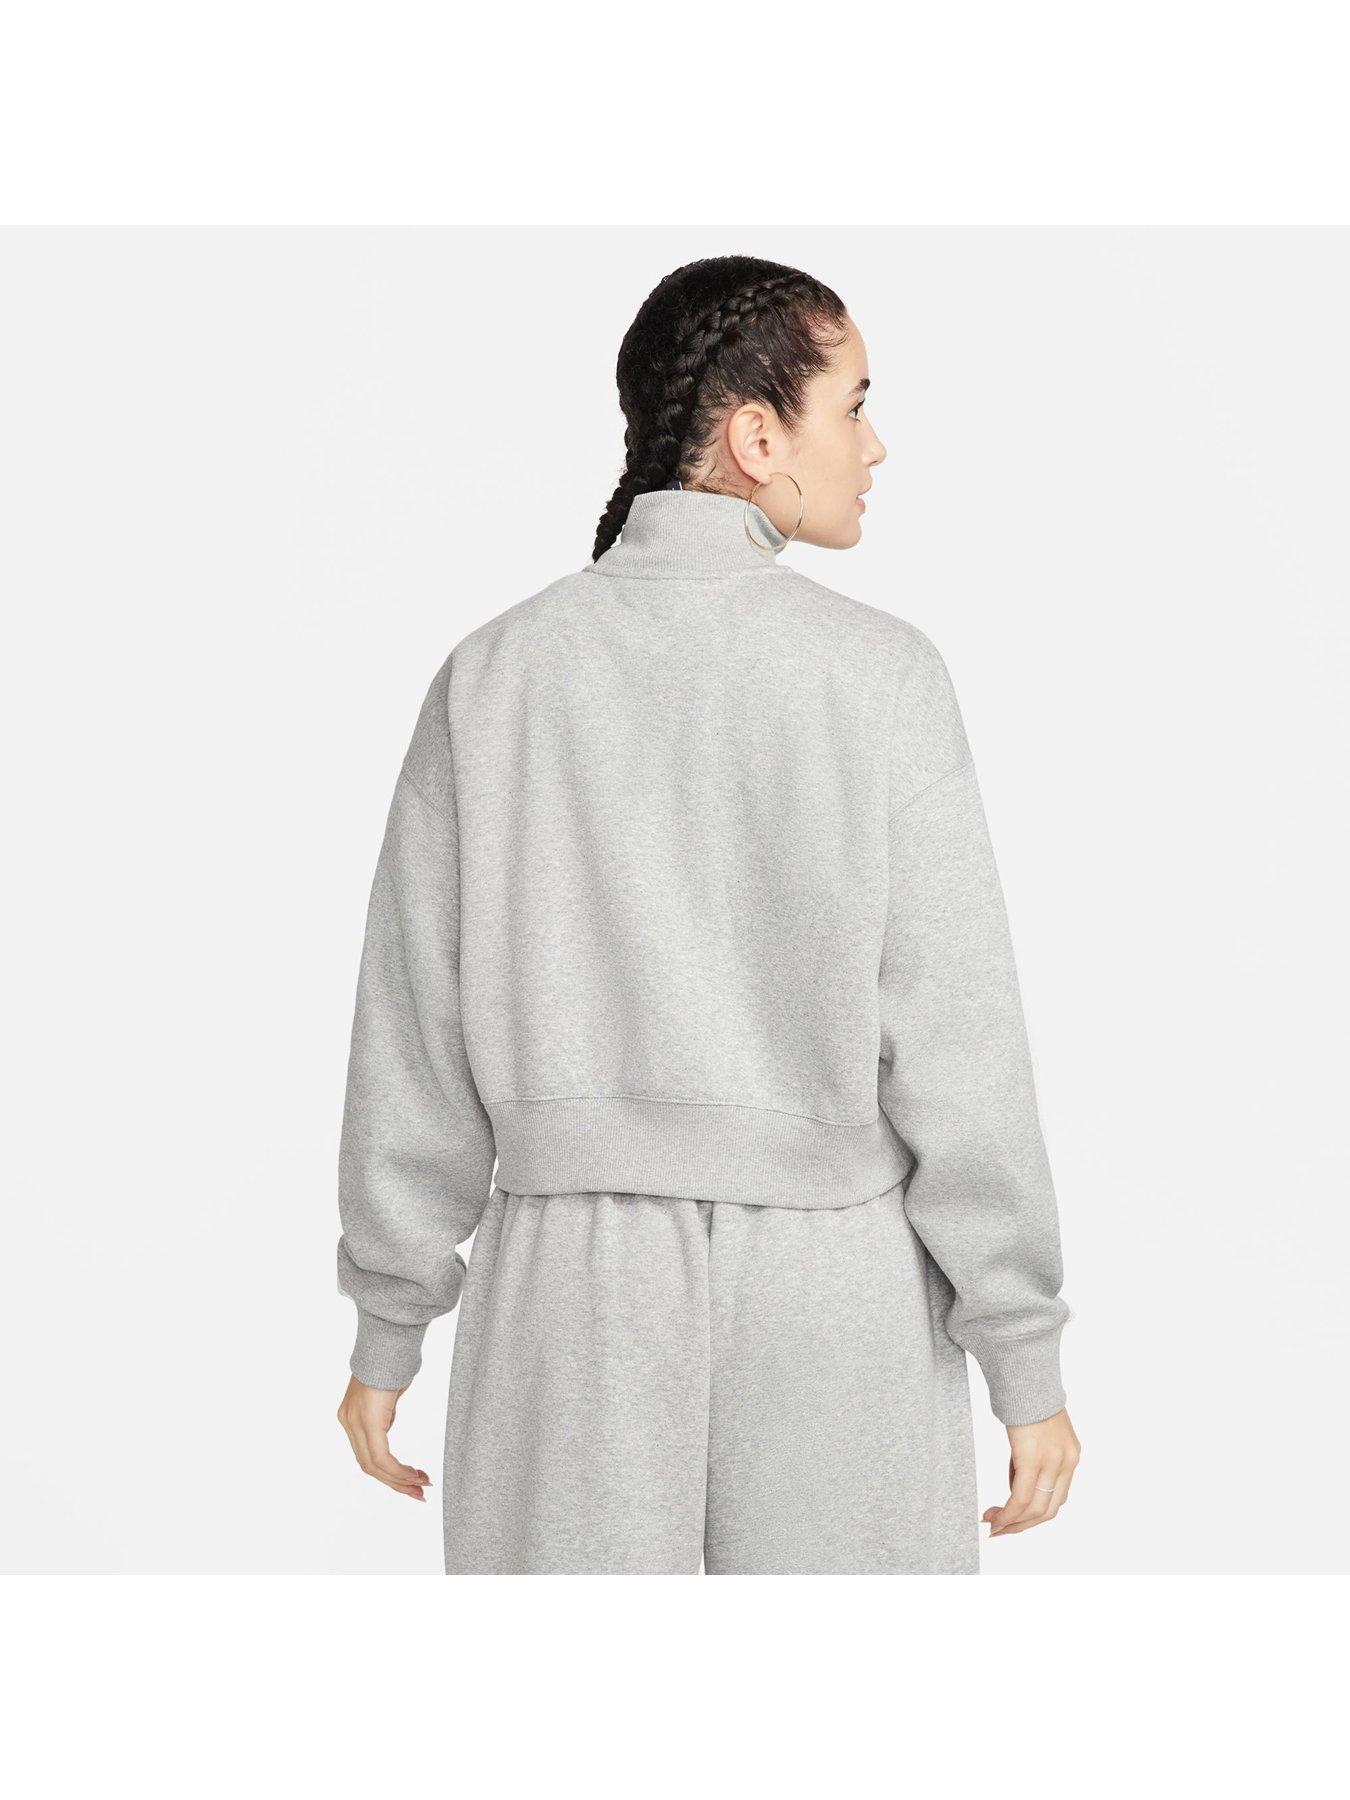 Nike Women's Sportswear Phoenix Fleece Oversized 1/2-Zip Crop